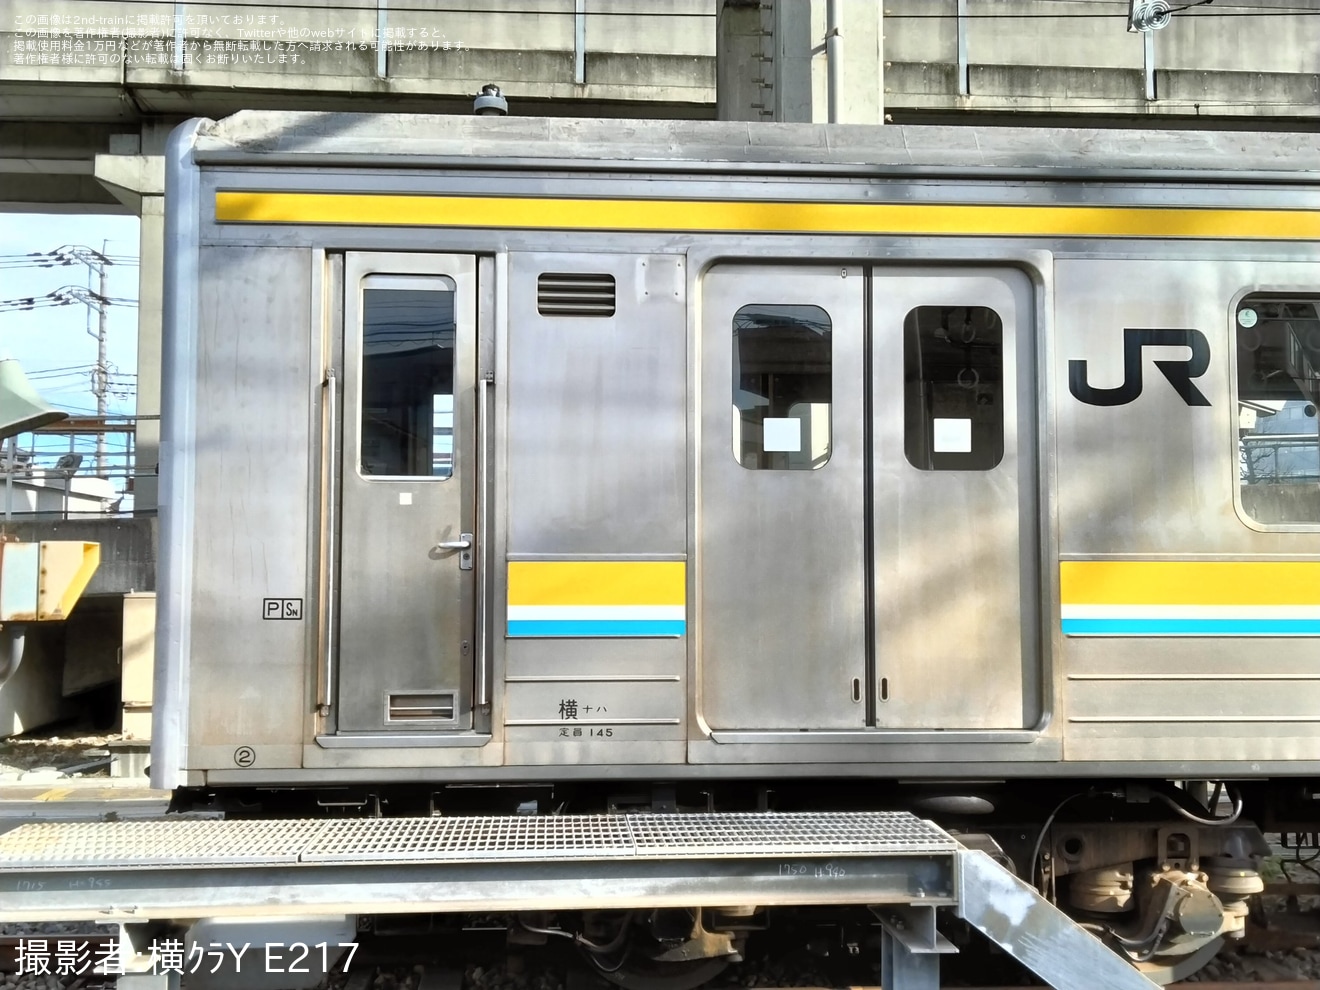 【JR東】205系T19編成広告撤去の拡大写真